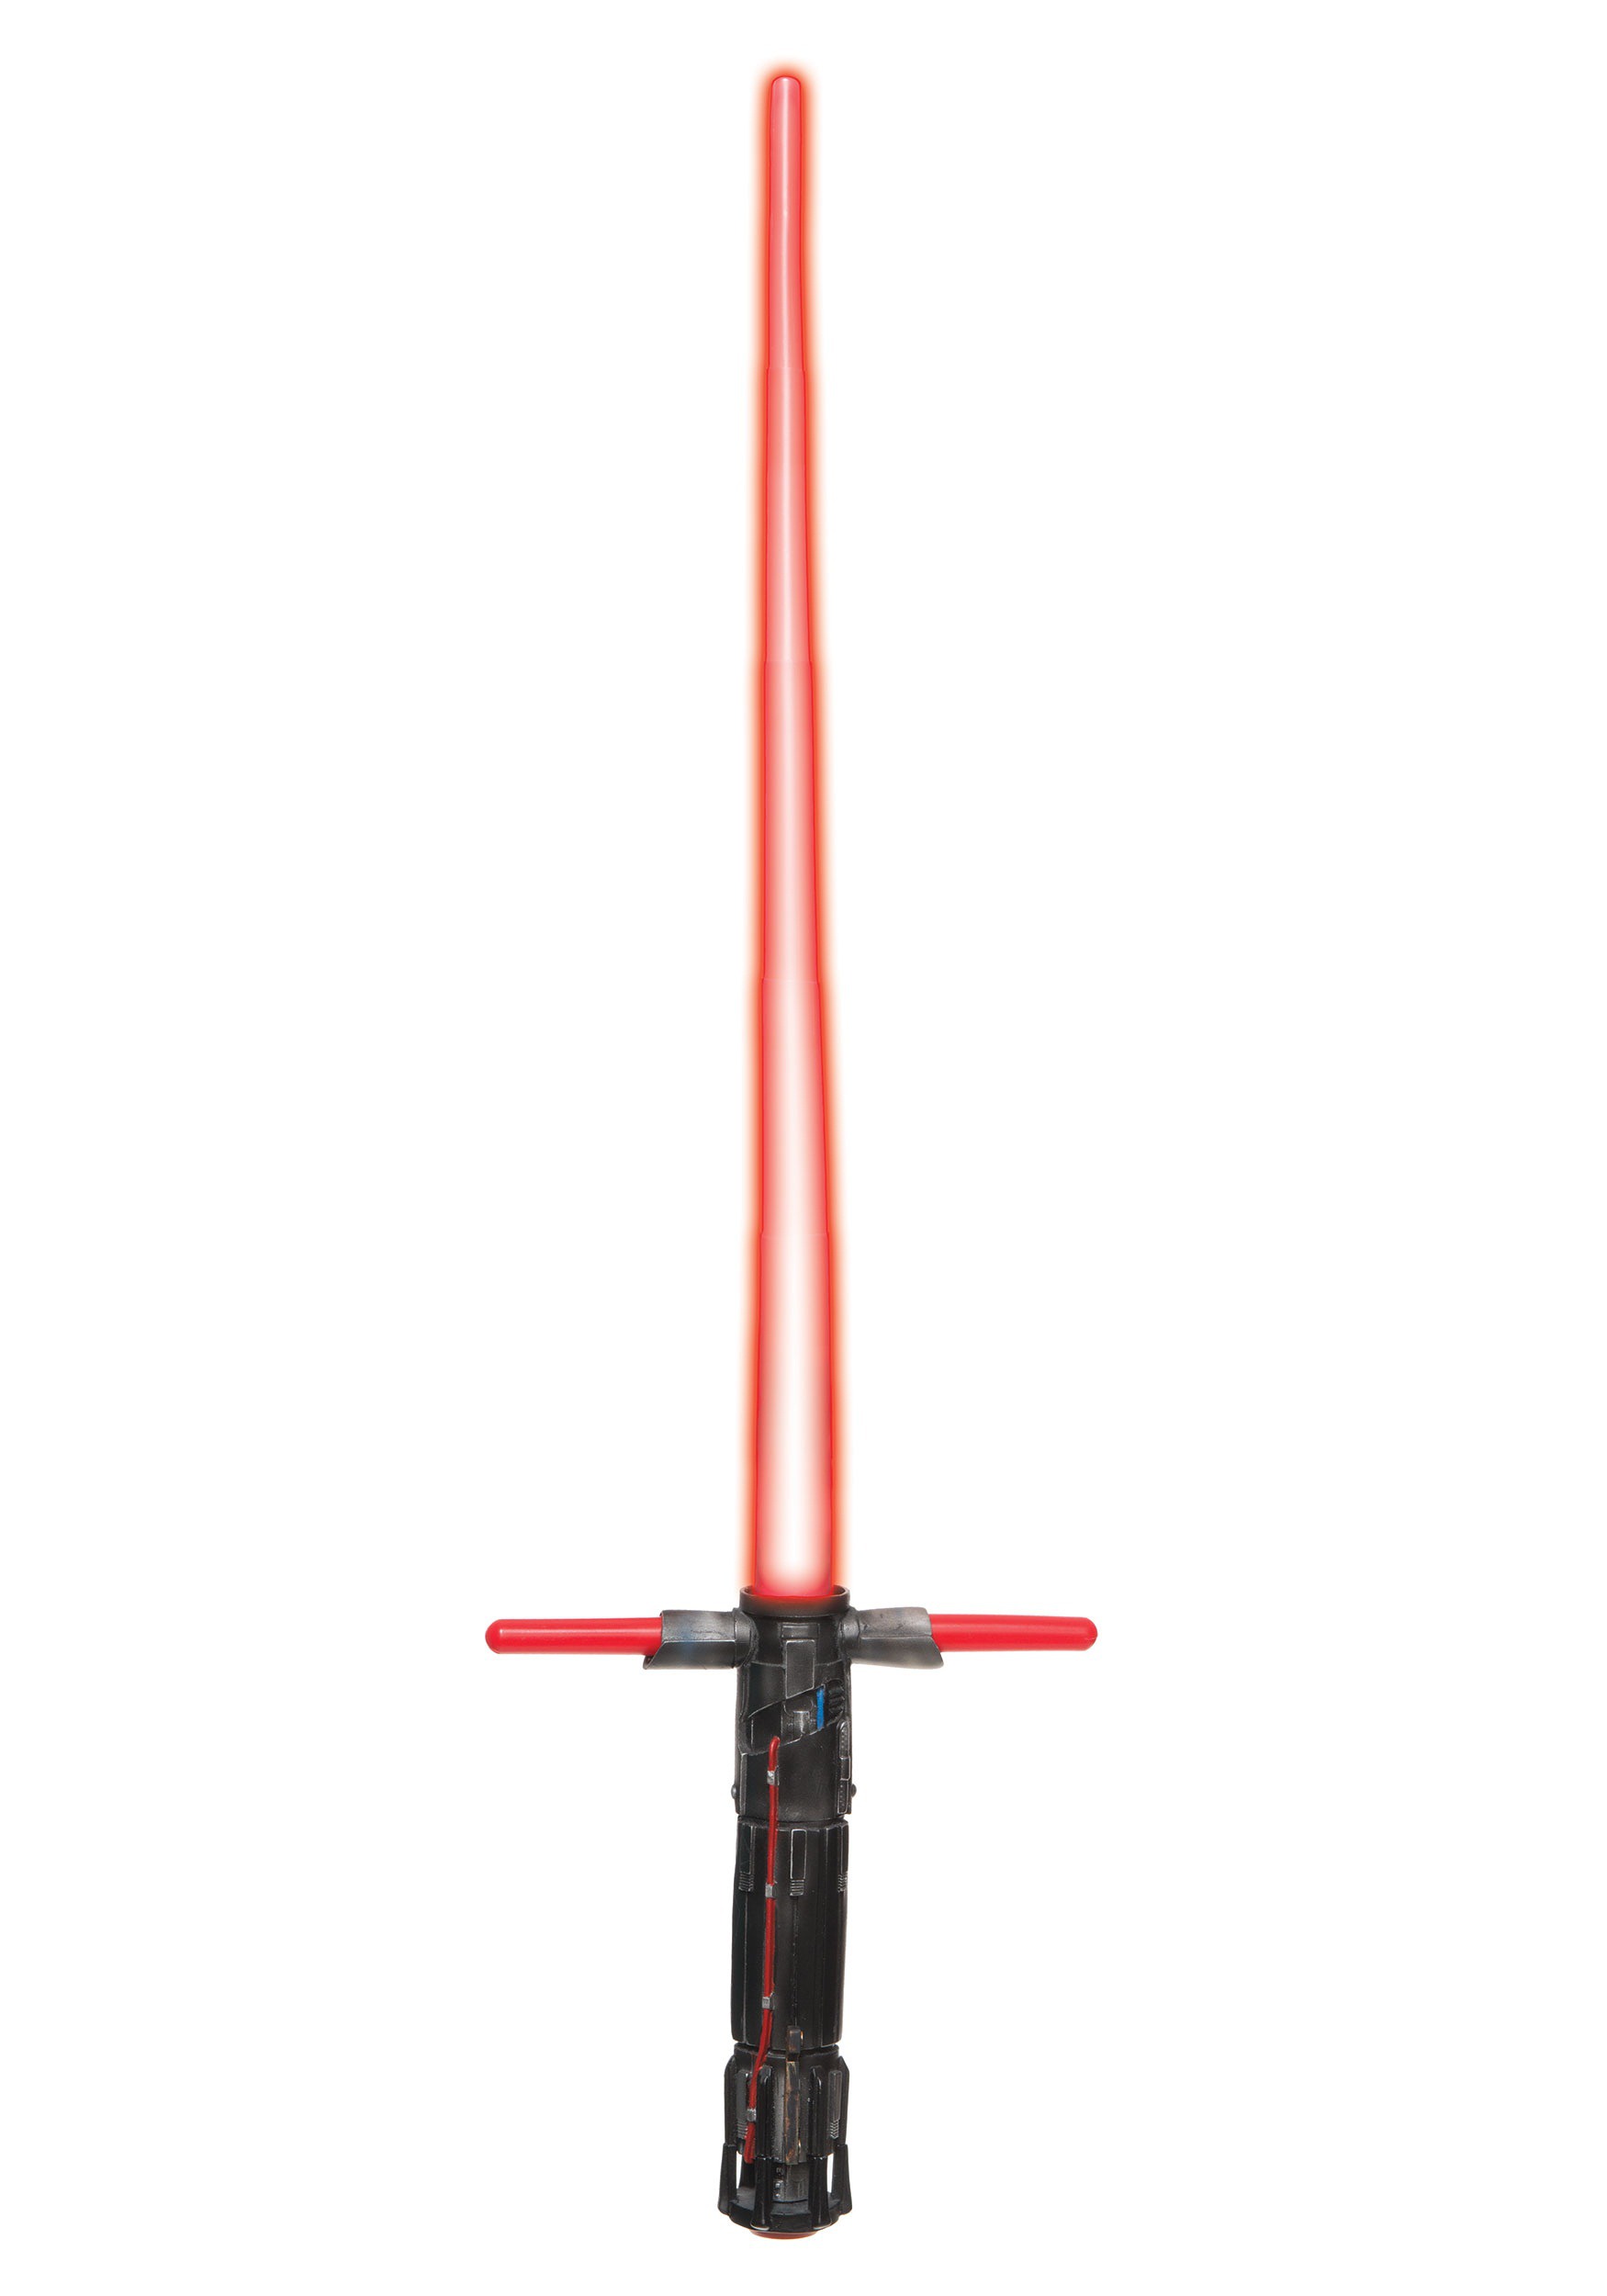 kylo ren sword toy